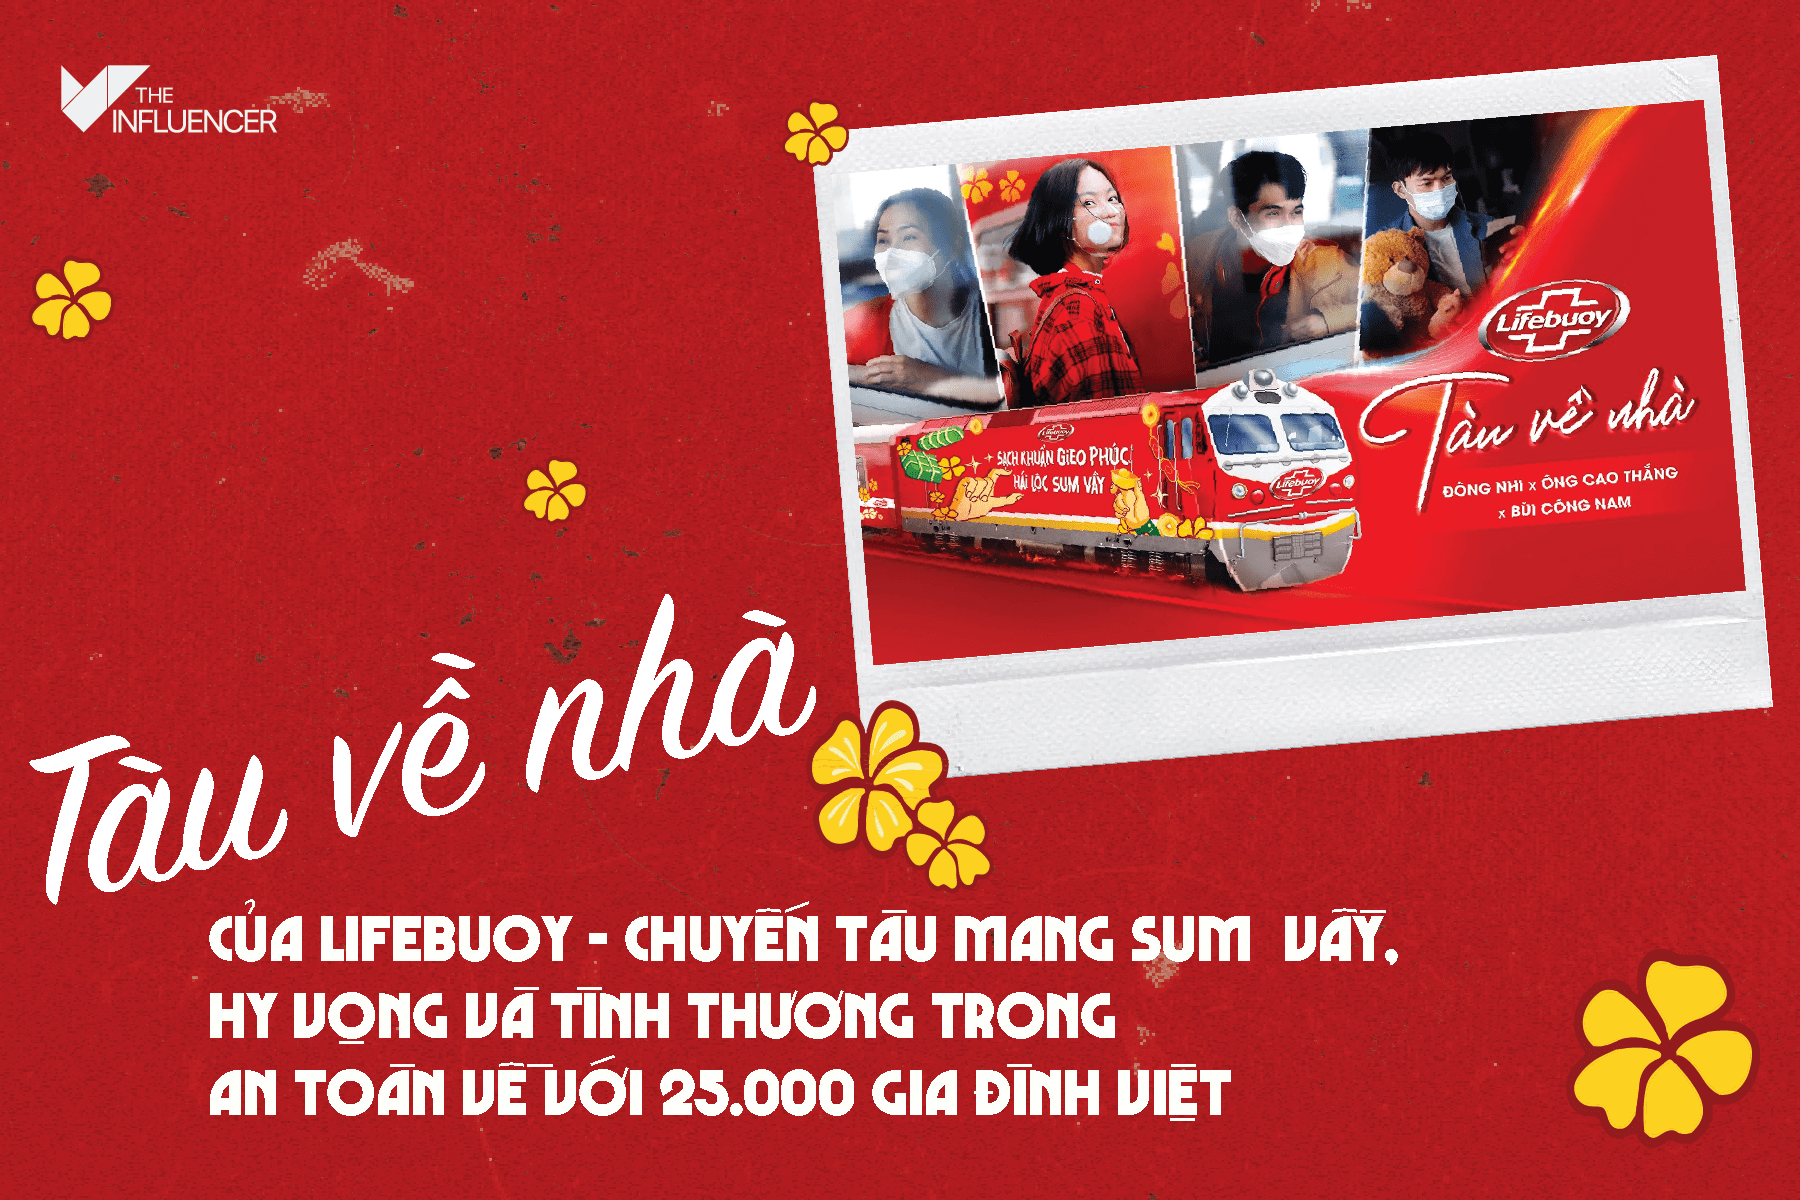 #Casestudy: “Tàu về nhà” của Lifebuoy - Chuyến tàu mang sum vầy, hy vọng và tình thương trong an toàn về với 25.000 gia đình Việt